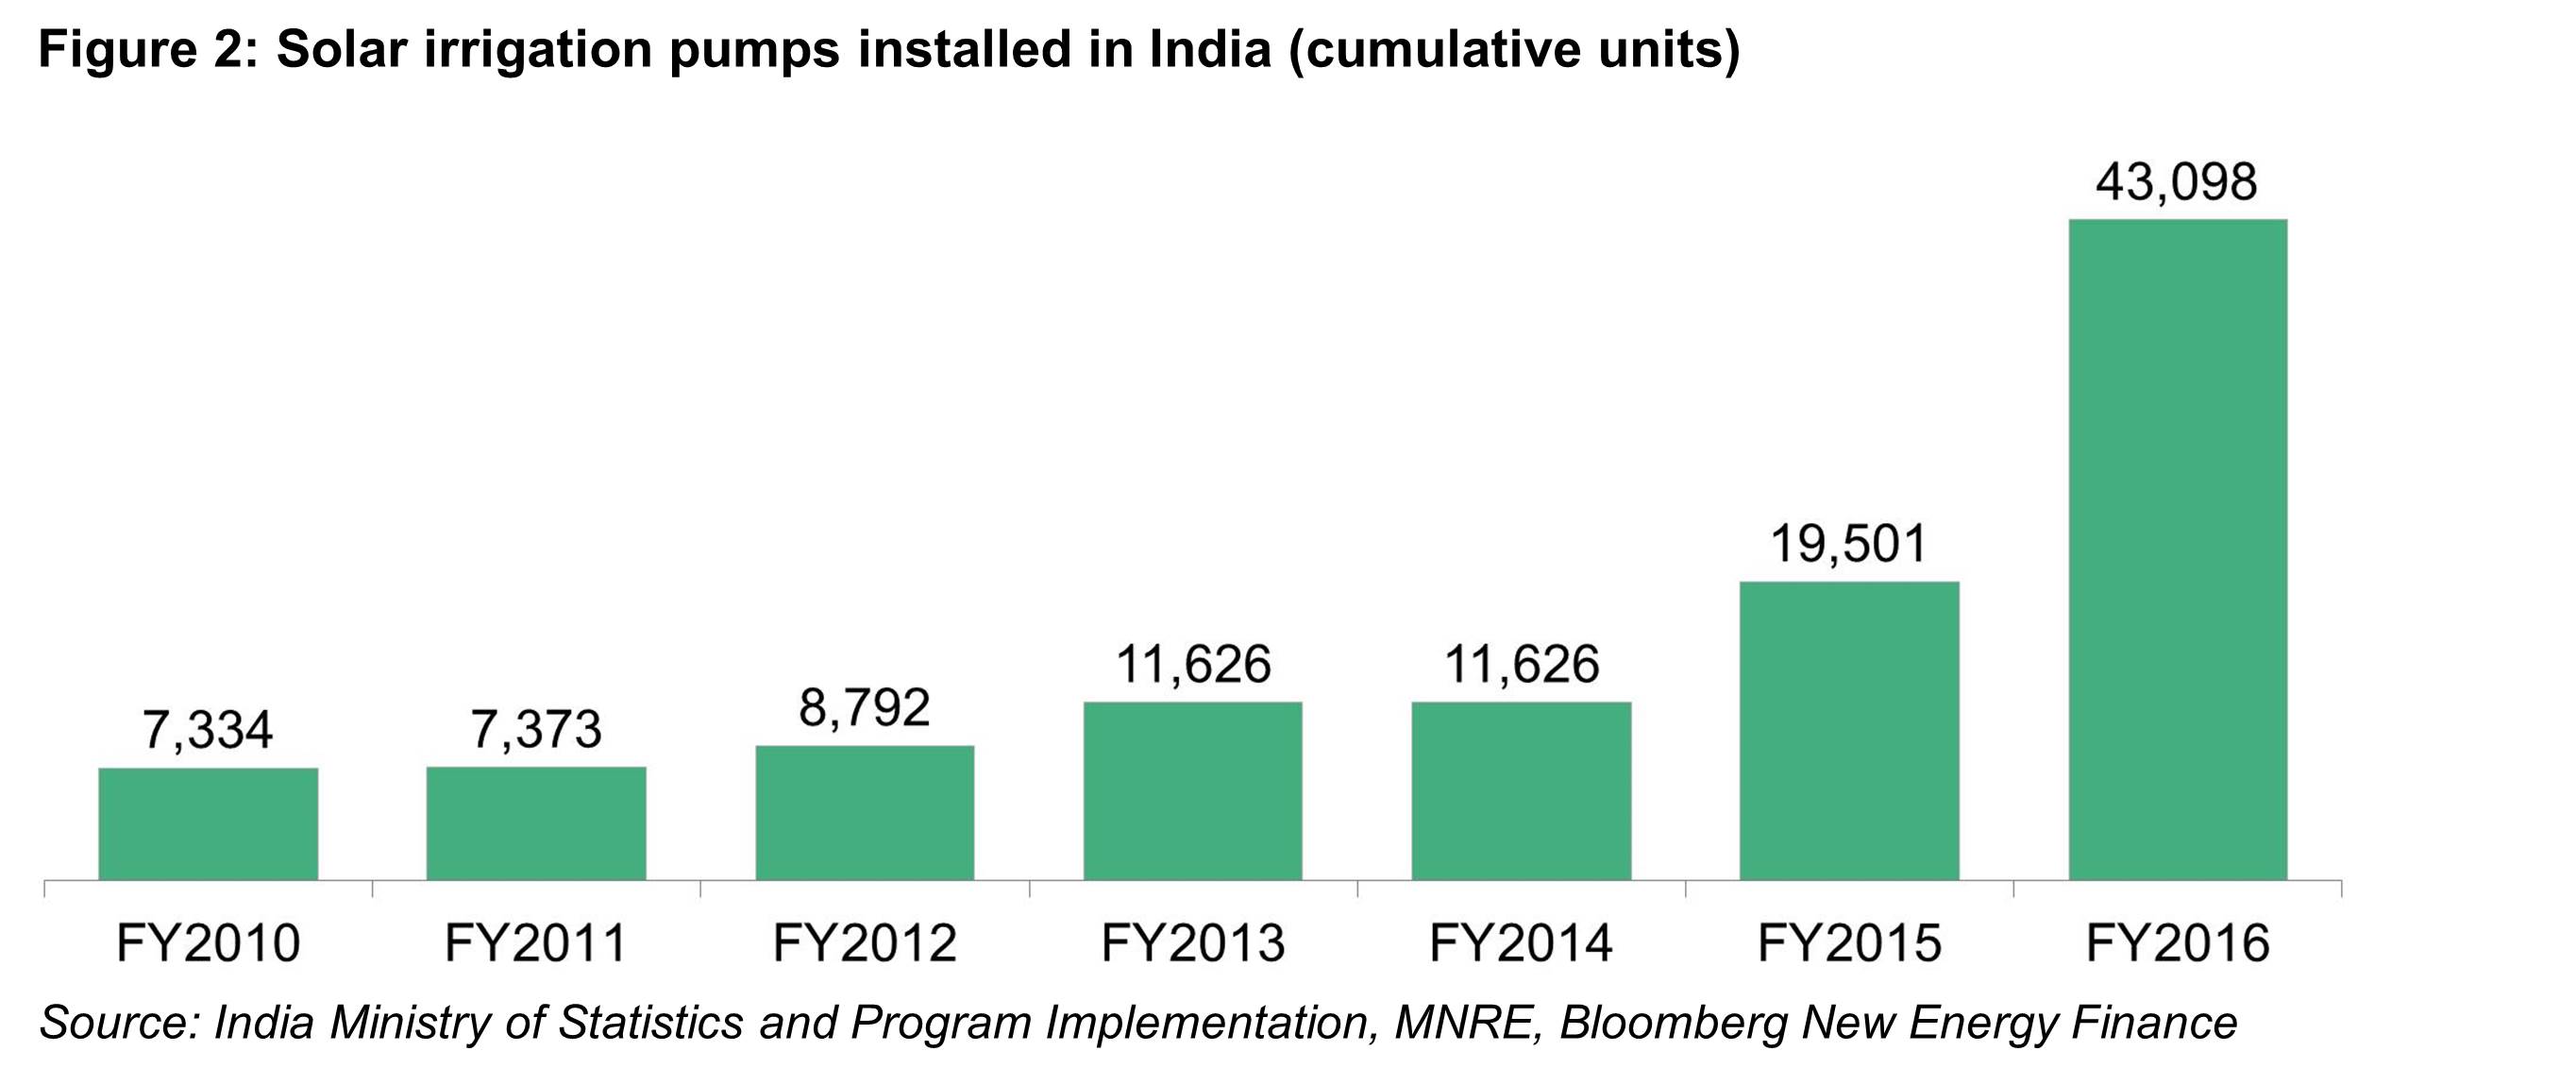 OG - Fig2 - Solar irrigation pumps installed in India